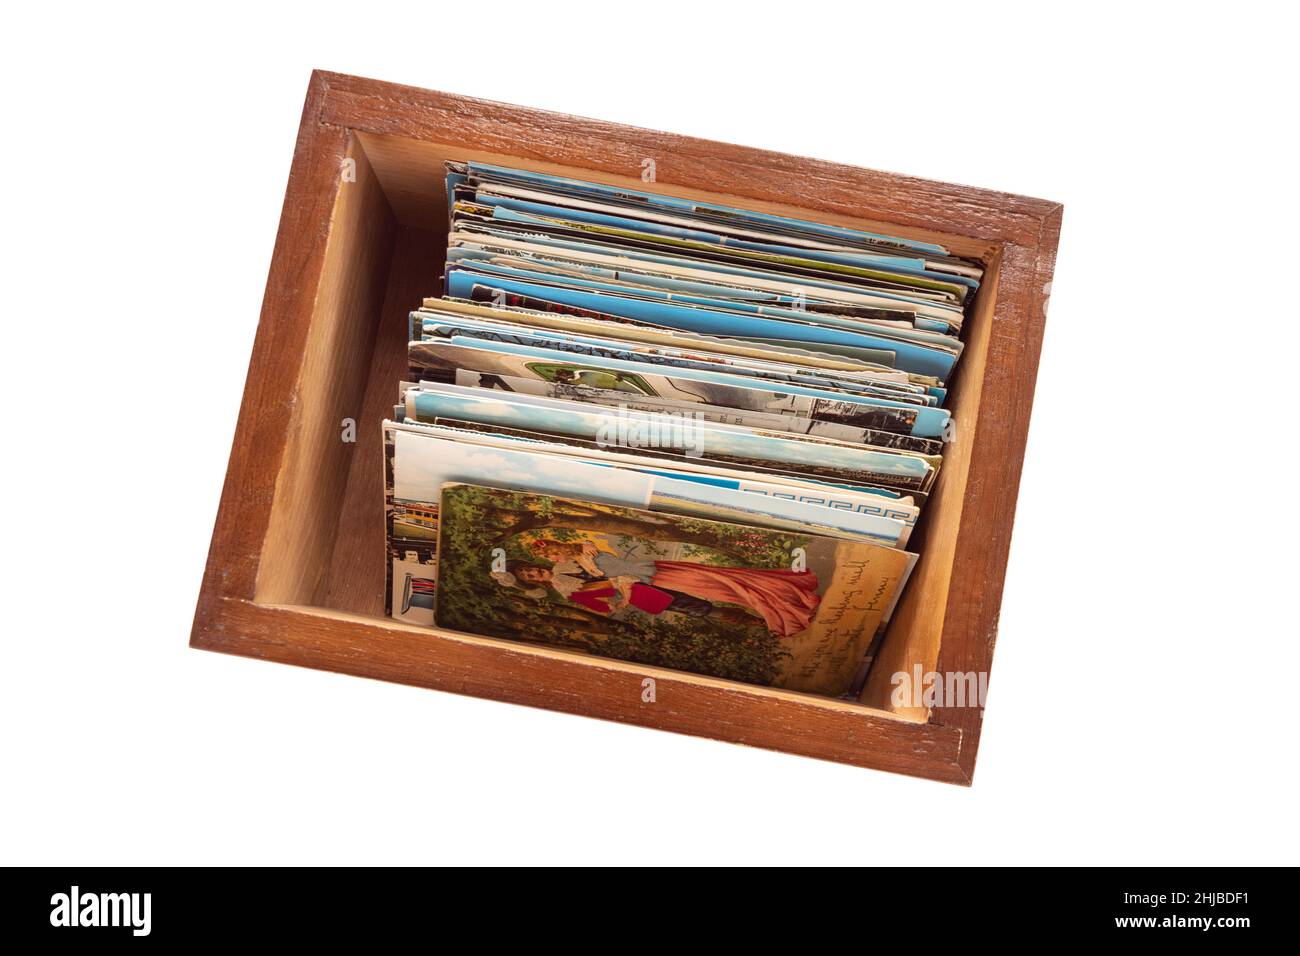 colección de postales - postales antiguas almacenadas dentro de una caja de madera Foto de stock